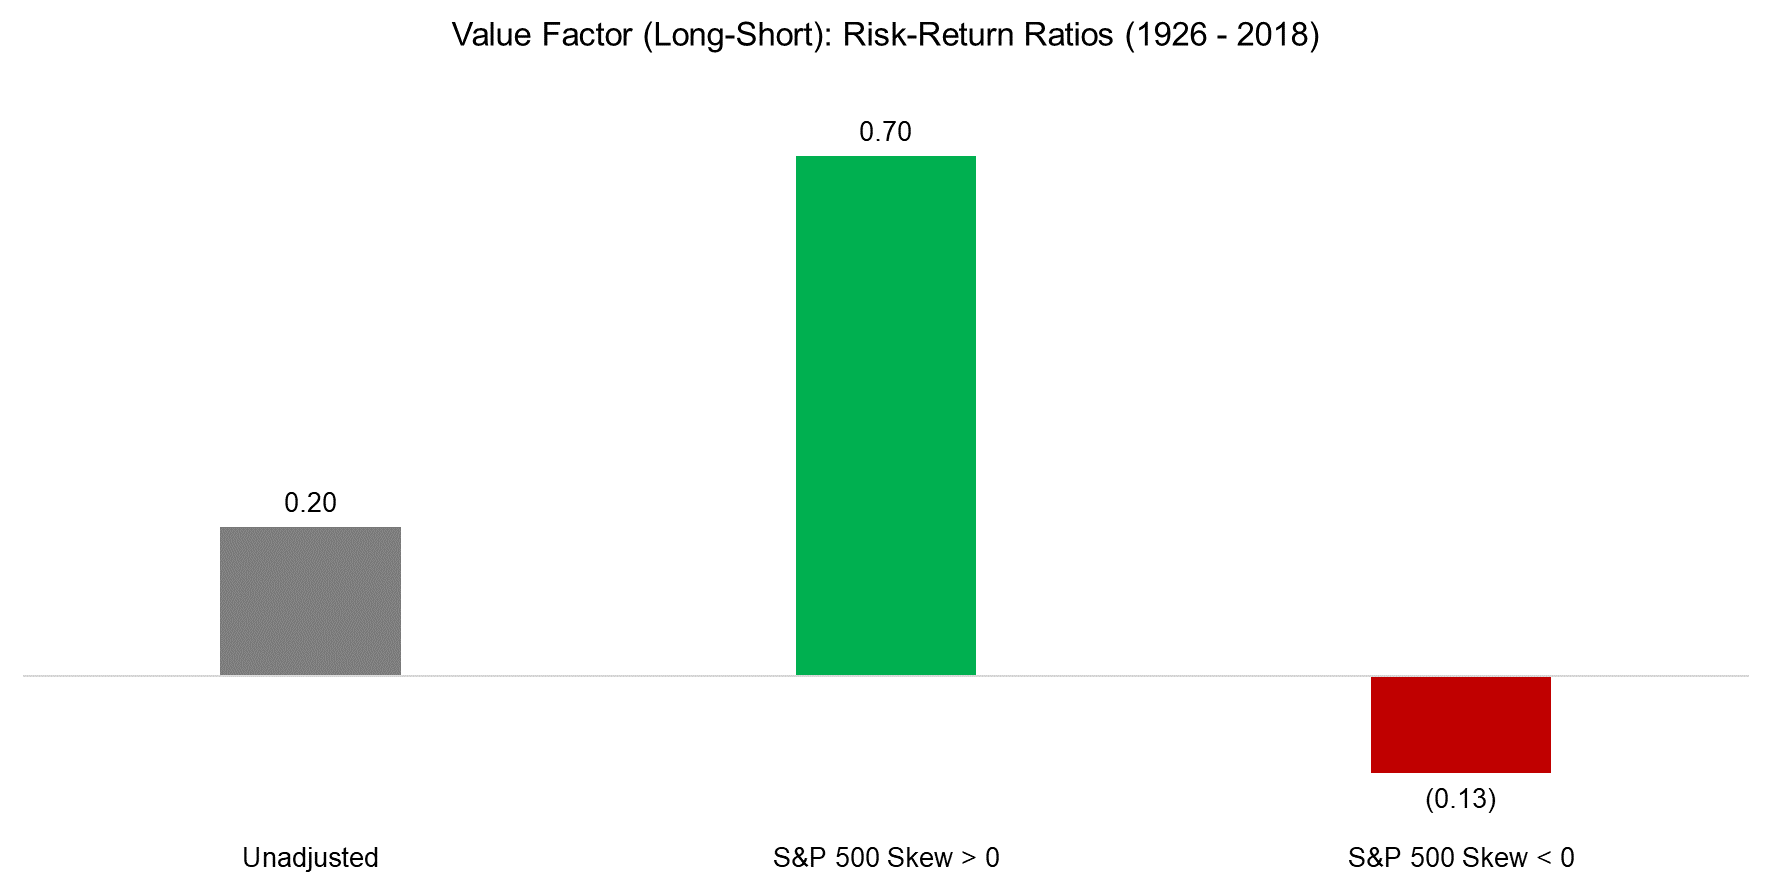 Value Factor (Long-Short) Risk-Return Ratios (1926 - 2018)